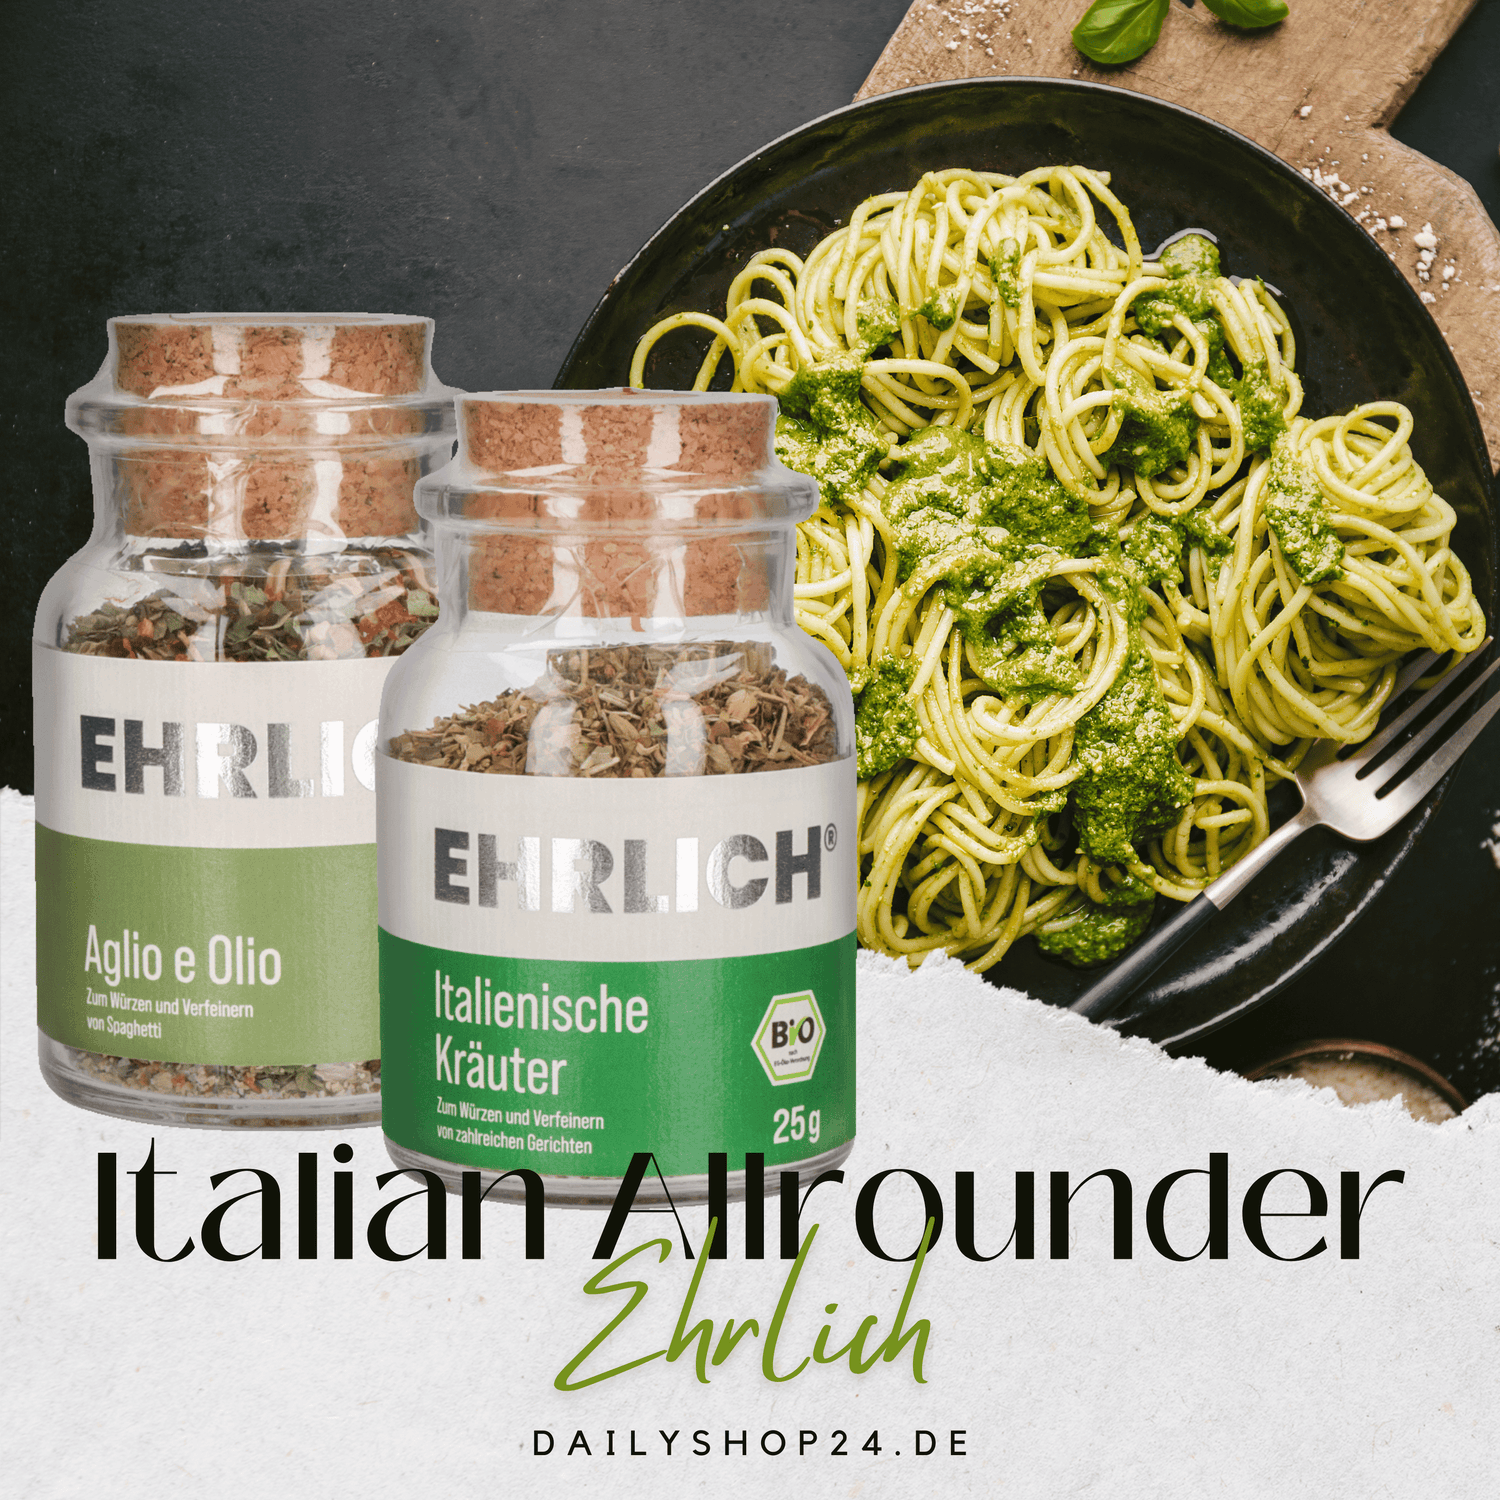 Jetzt die Bio-Gewürze für italienisches Essen von EHRLICH entdecken!